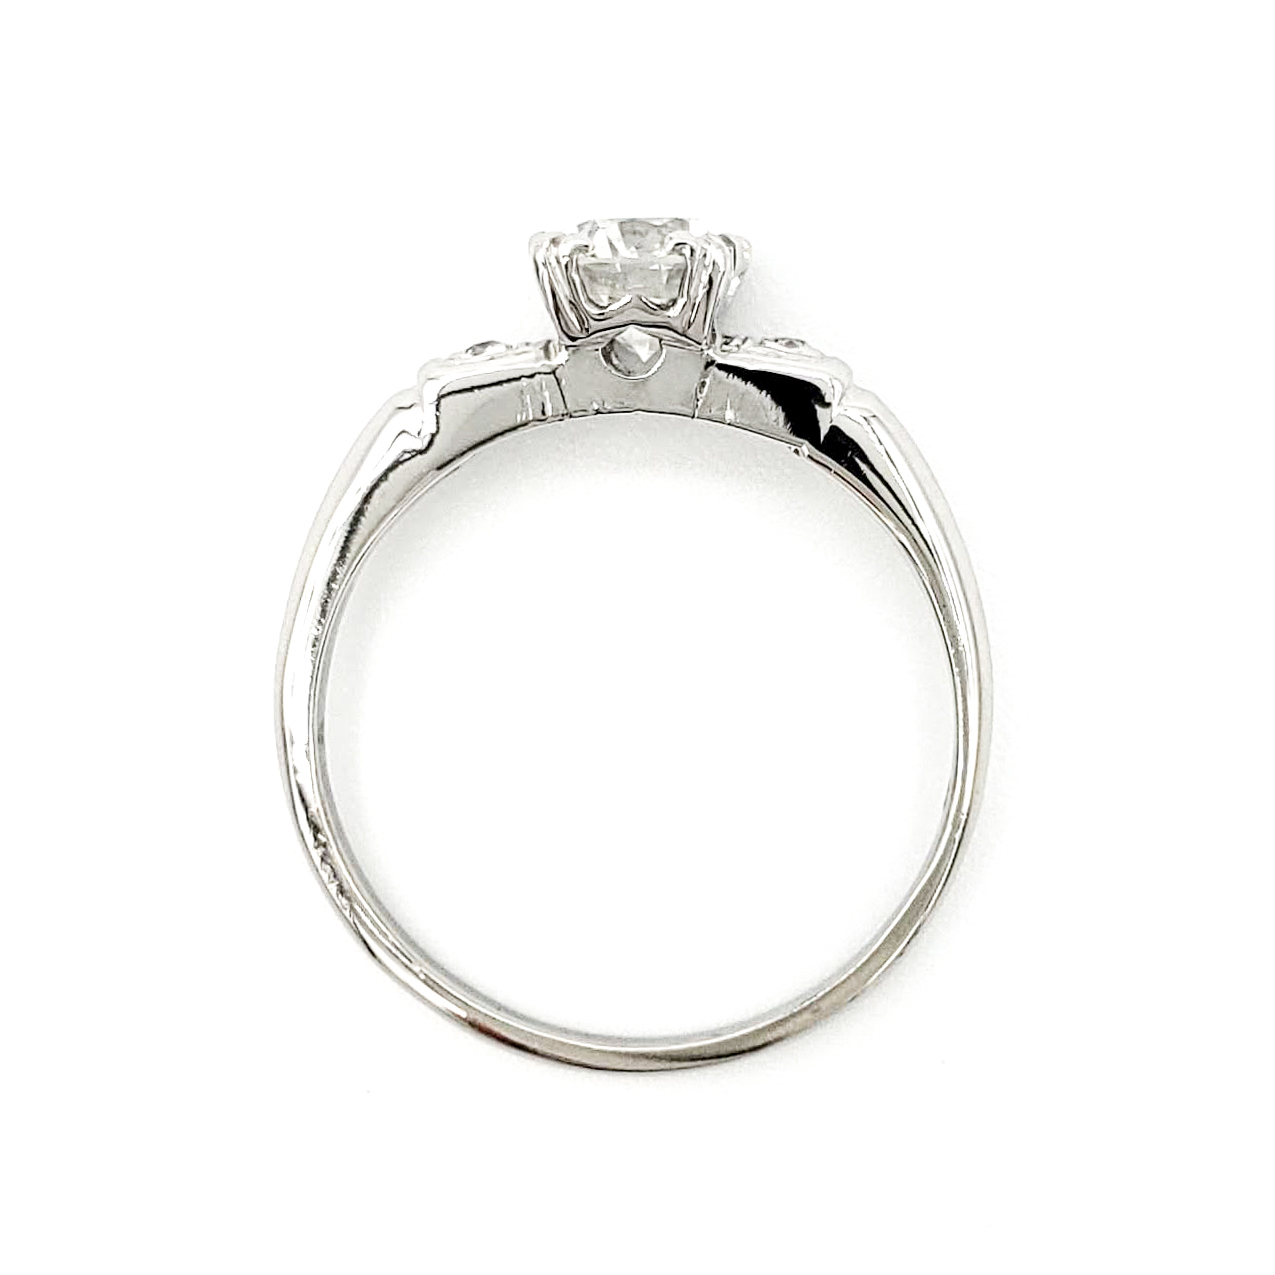 vintage-platinum-engagement-ring-with-0-70-carat-round-brilliant-cut-diamond-egl-f-si1